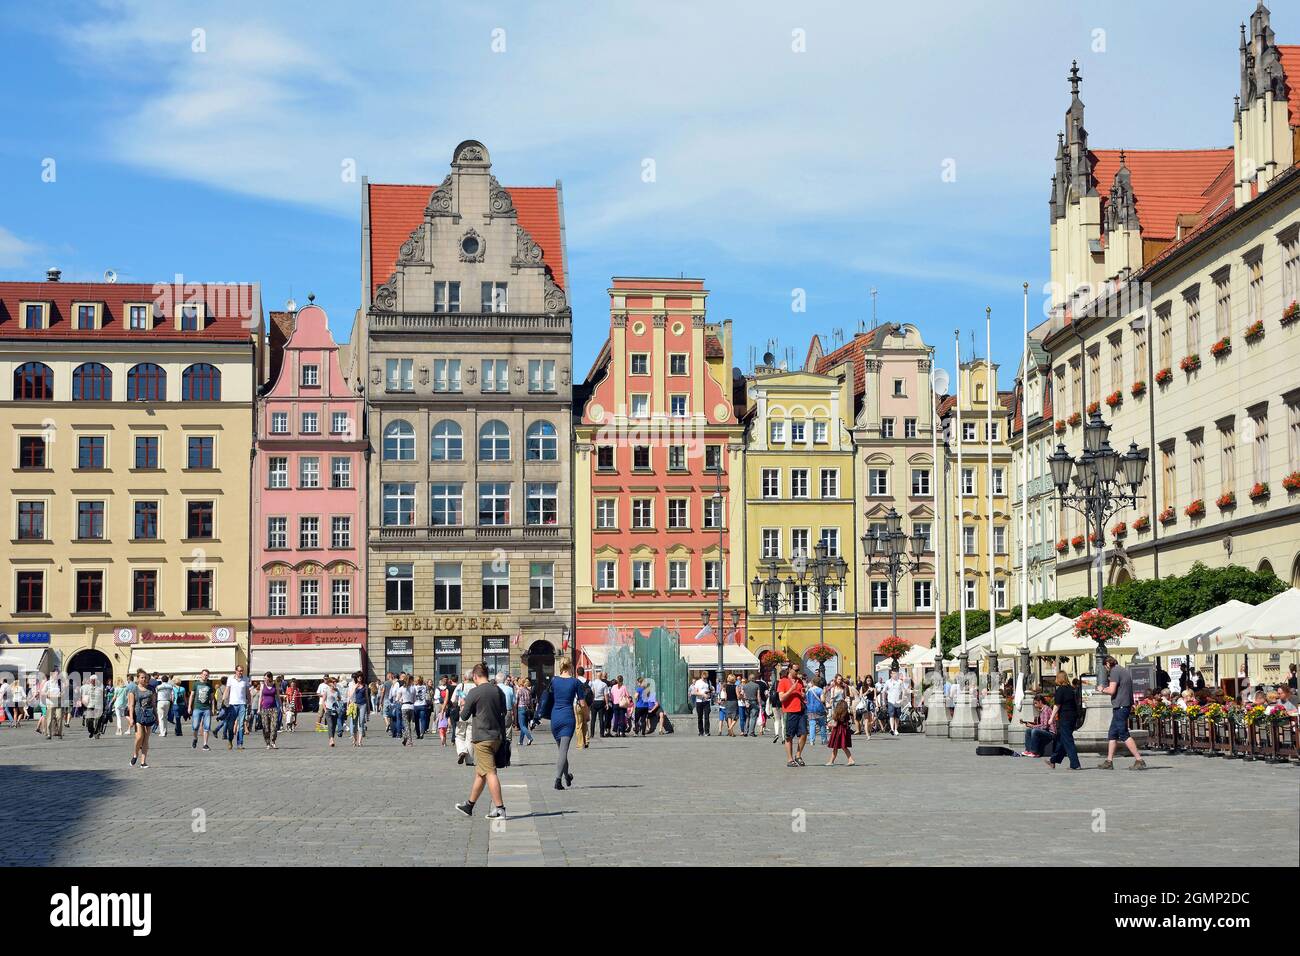 Platz in der historischen Altstadt von Breslau - Polen. Stockfoto